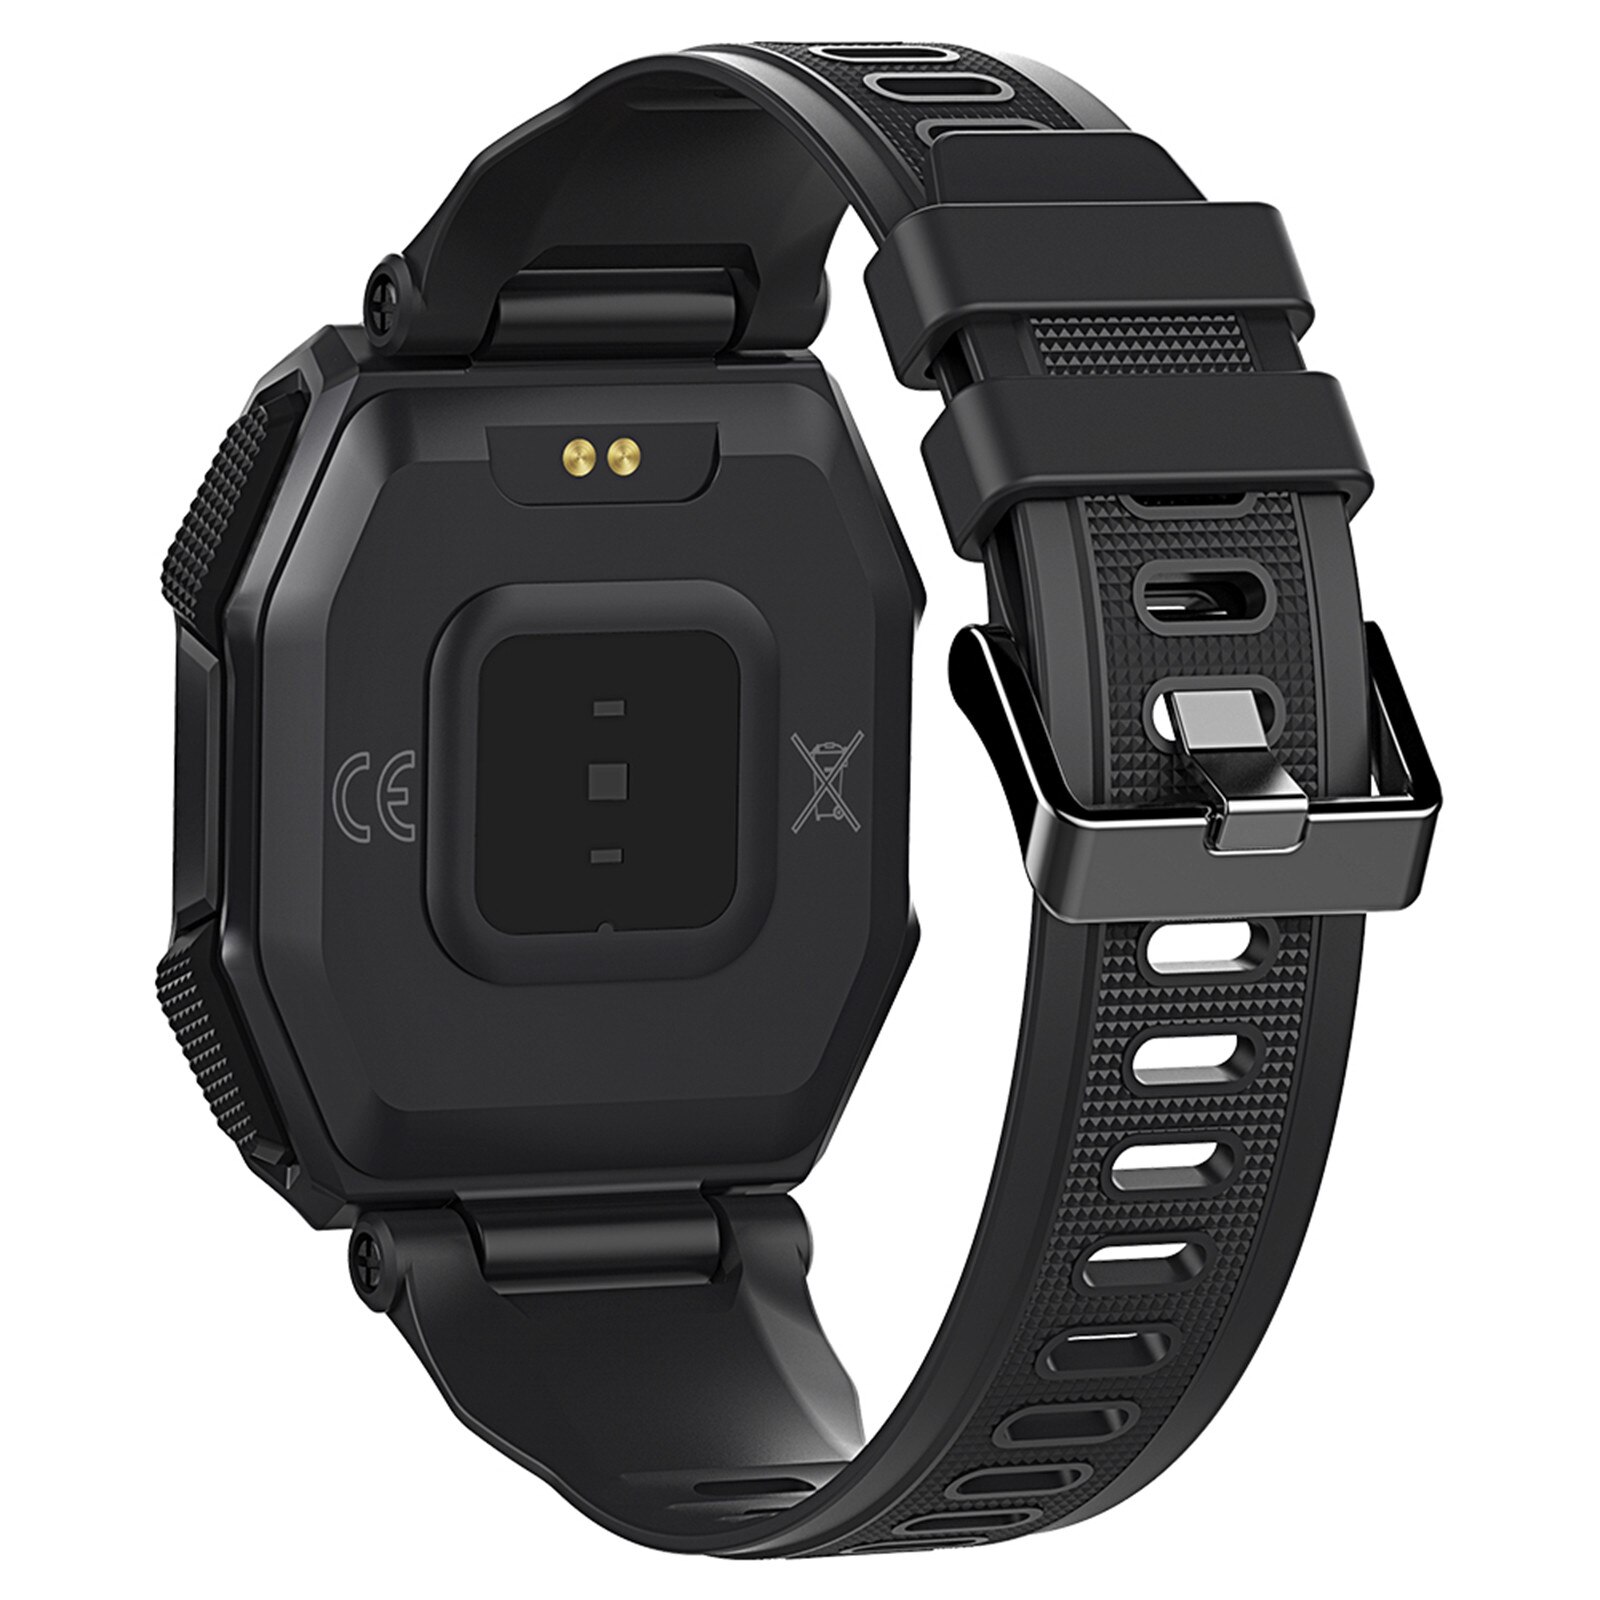 Smartwatch kospet rock watch för män utomhus sport vattentät fitness tracker blodtrycksmätare smart watch